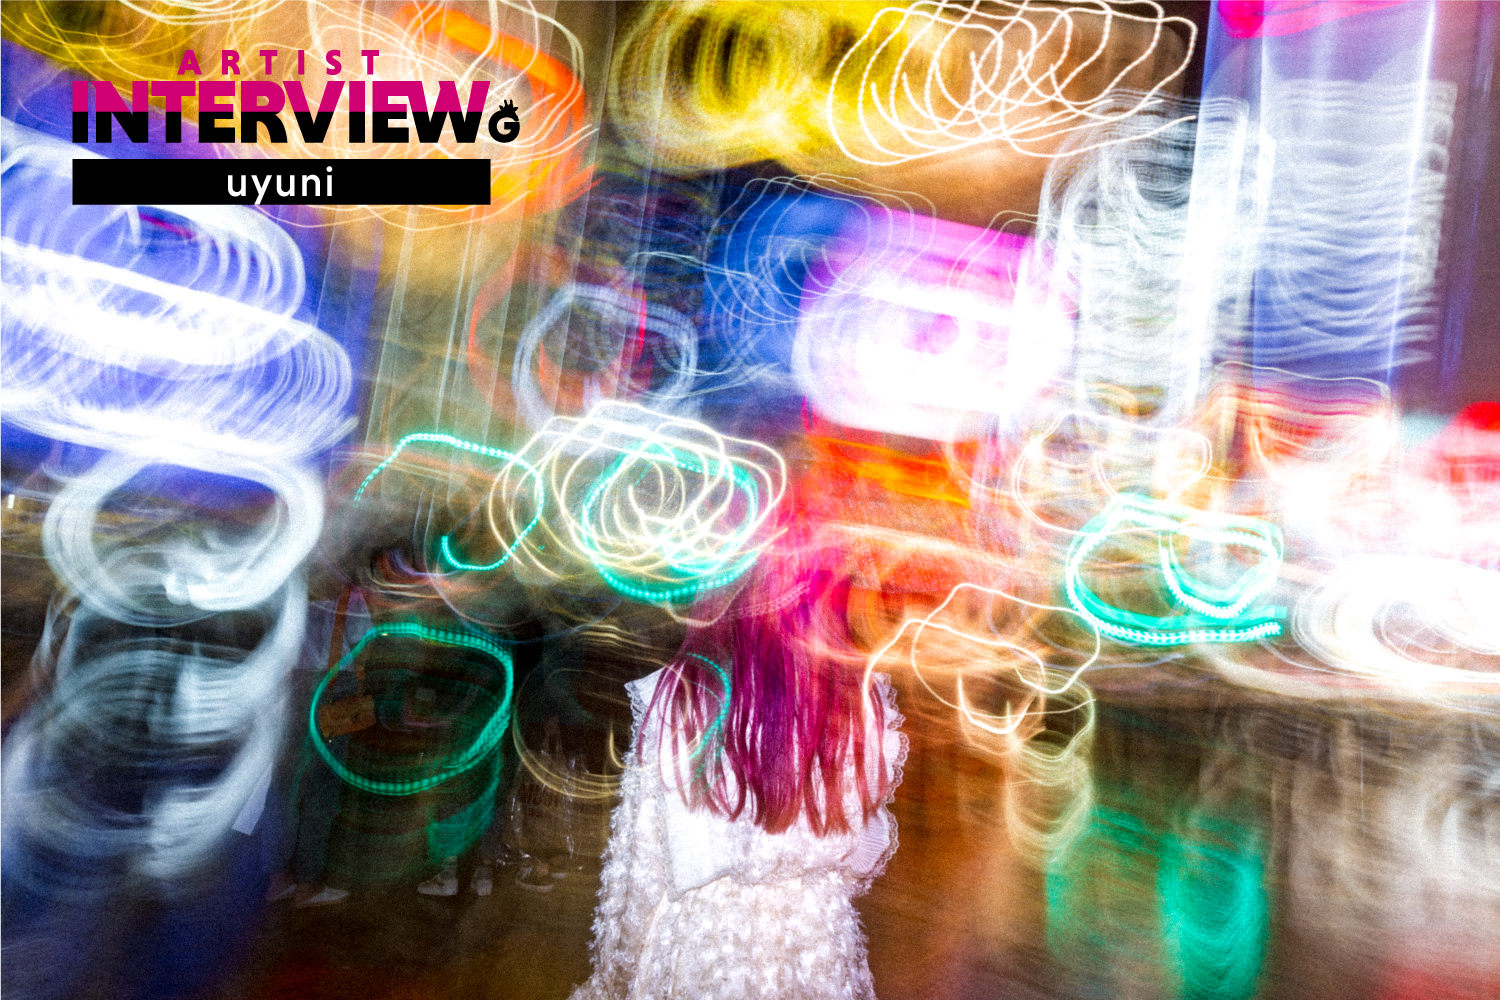 「【uyuni 独占インタビュー】 繊細かつしなやかな感性で音楽を作る、彼女の見ている世界とは」のアイキャッチ画像